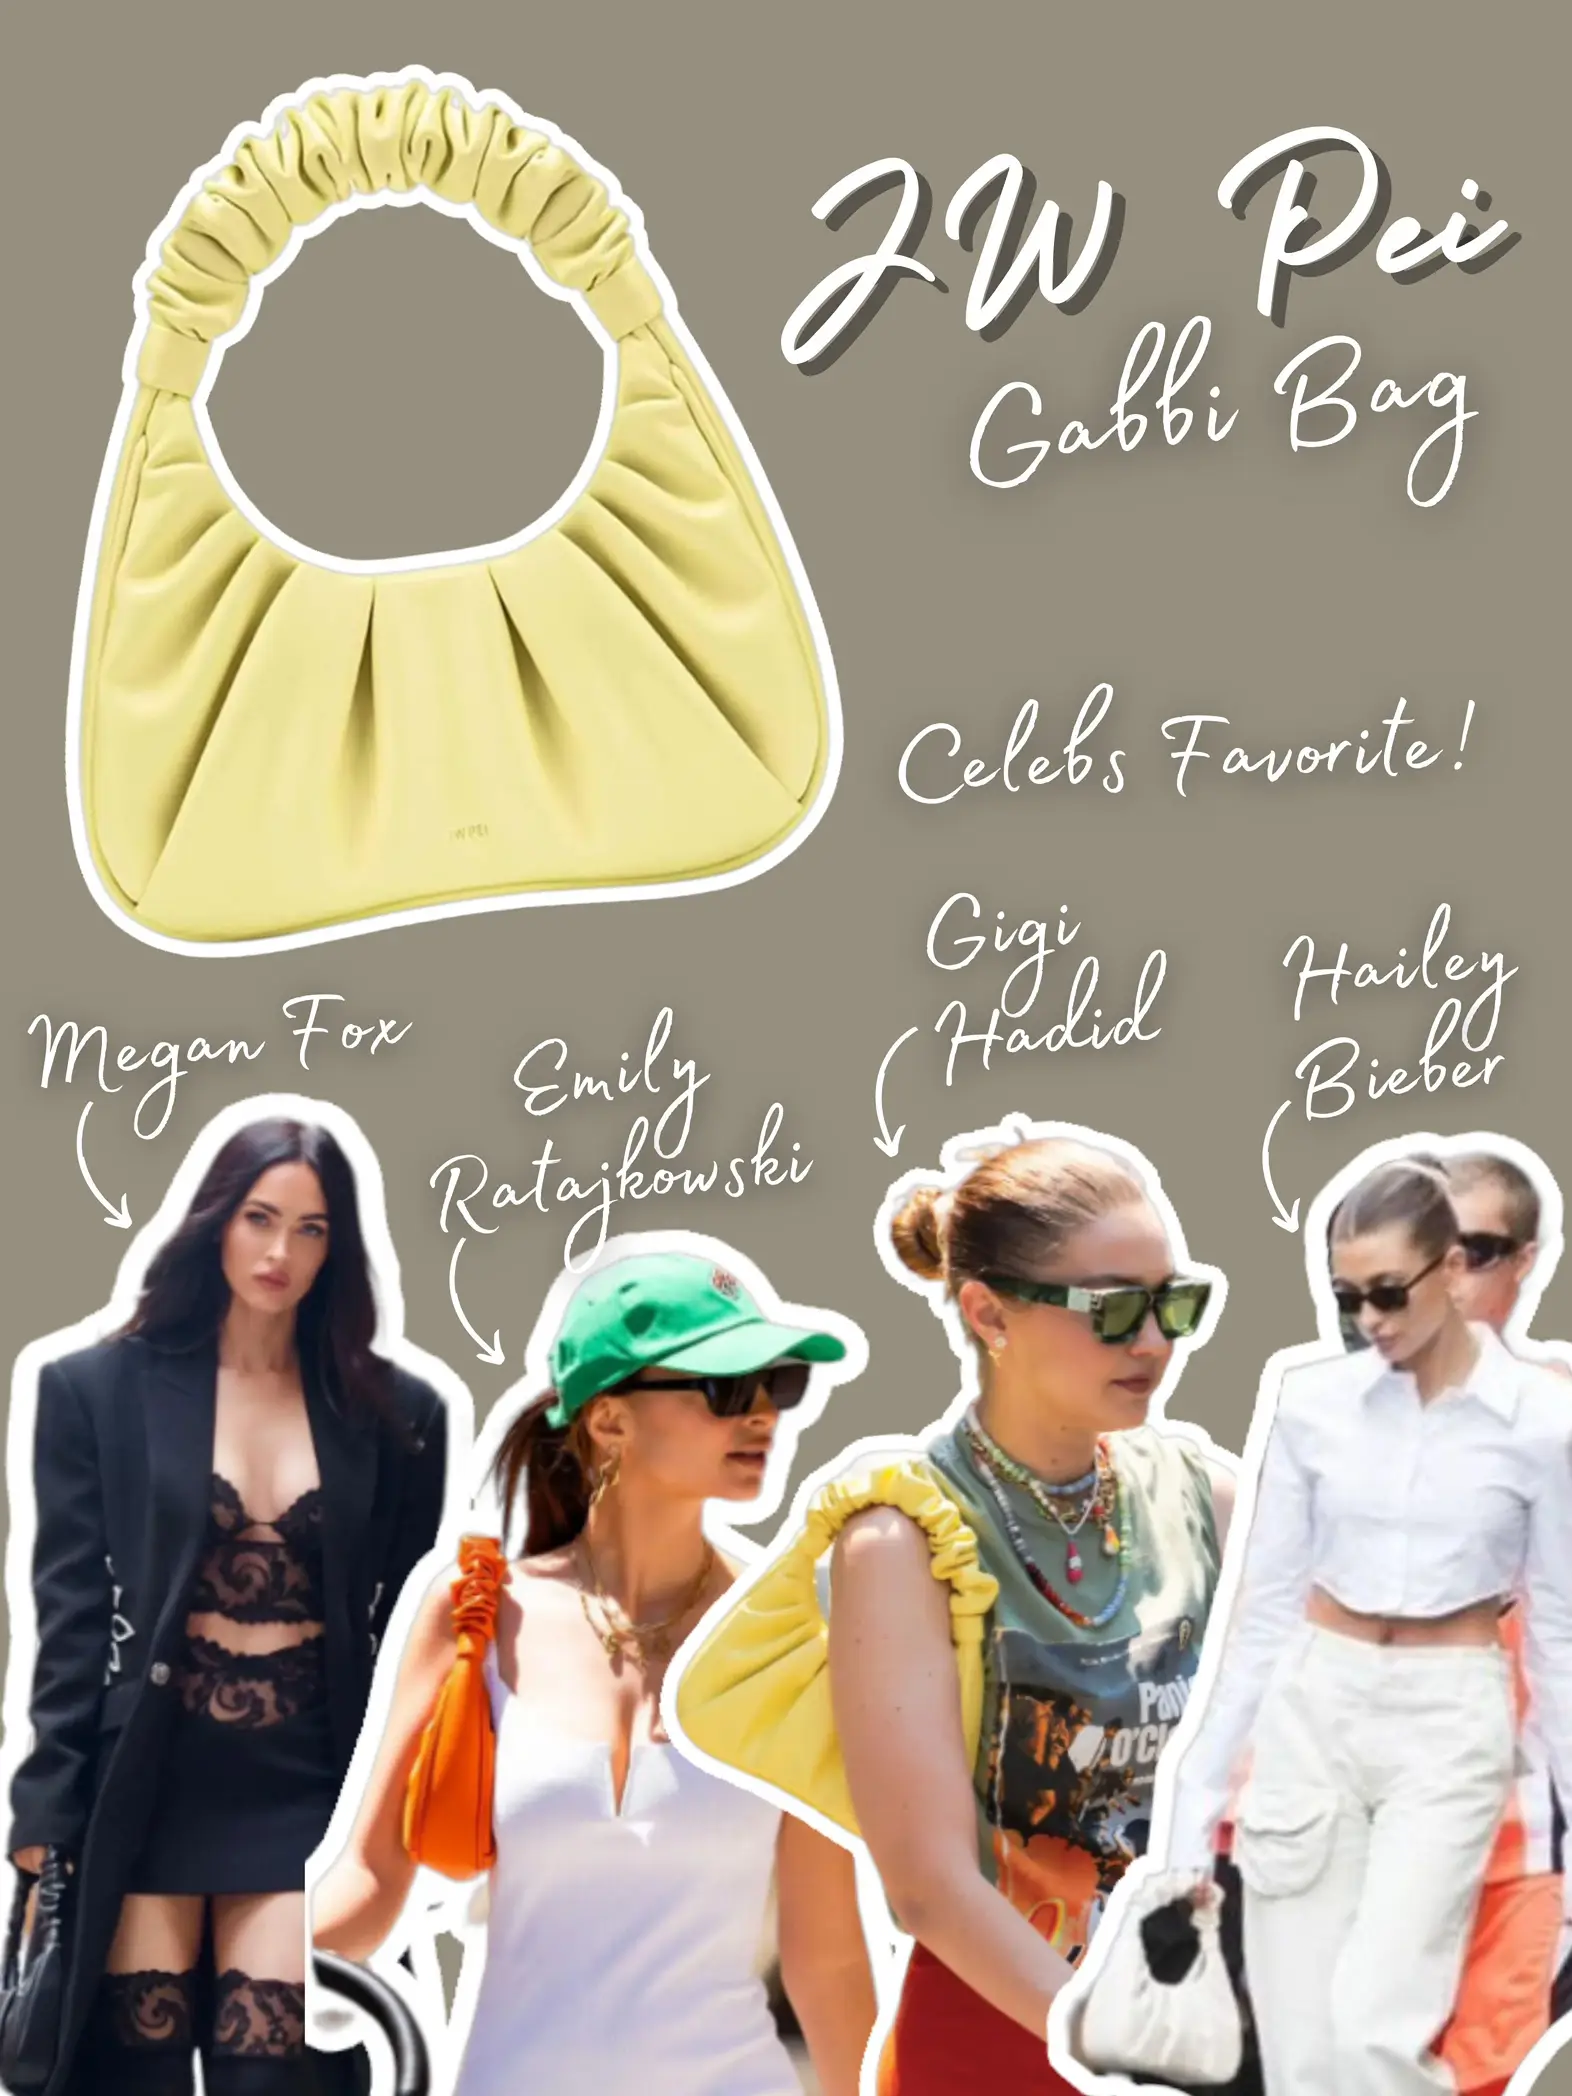 Emily Ratajkowski, Megan Fox and Gigi Hadid's JW PEI Handbag Is on